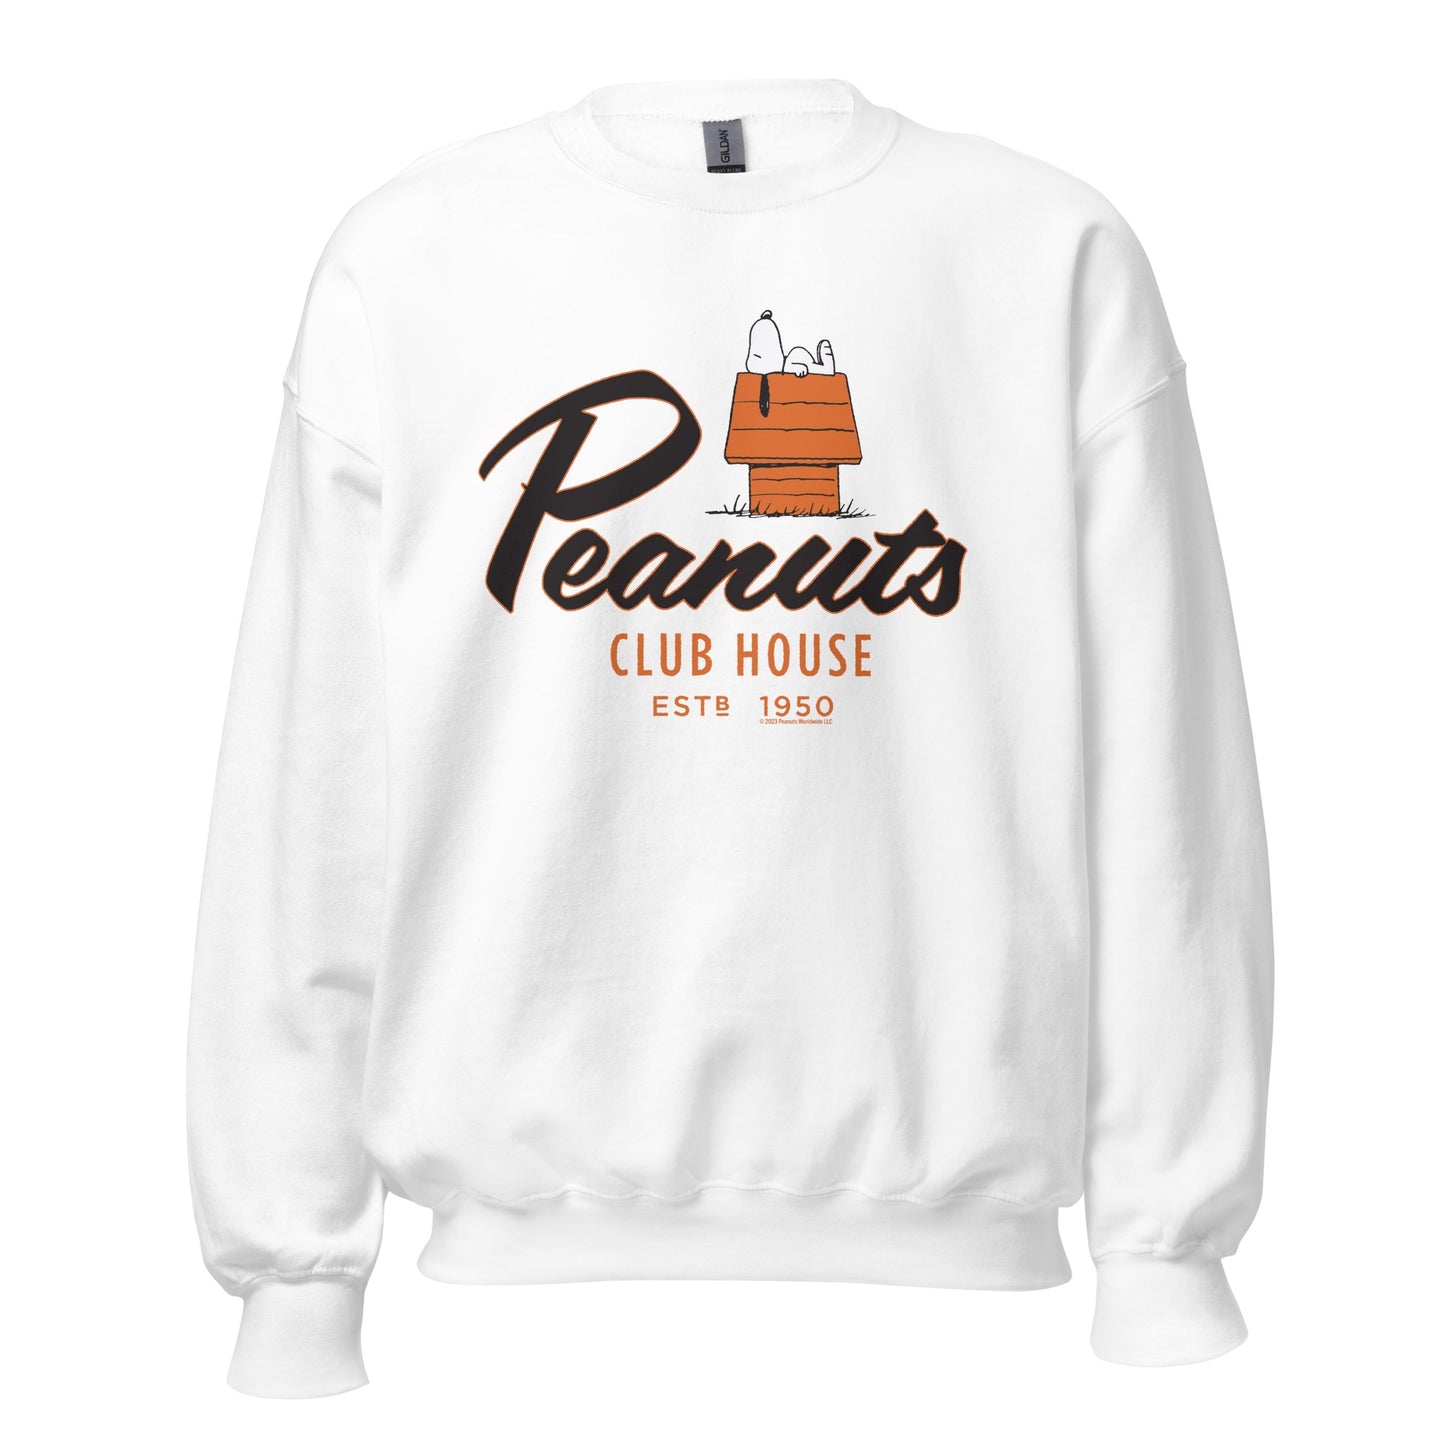 Peanuts Club House Snoopy Adult Sweatshirt